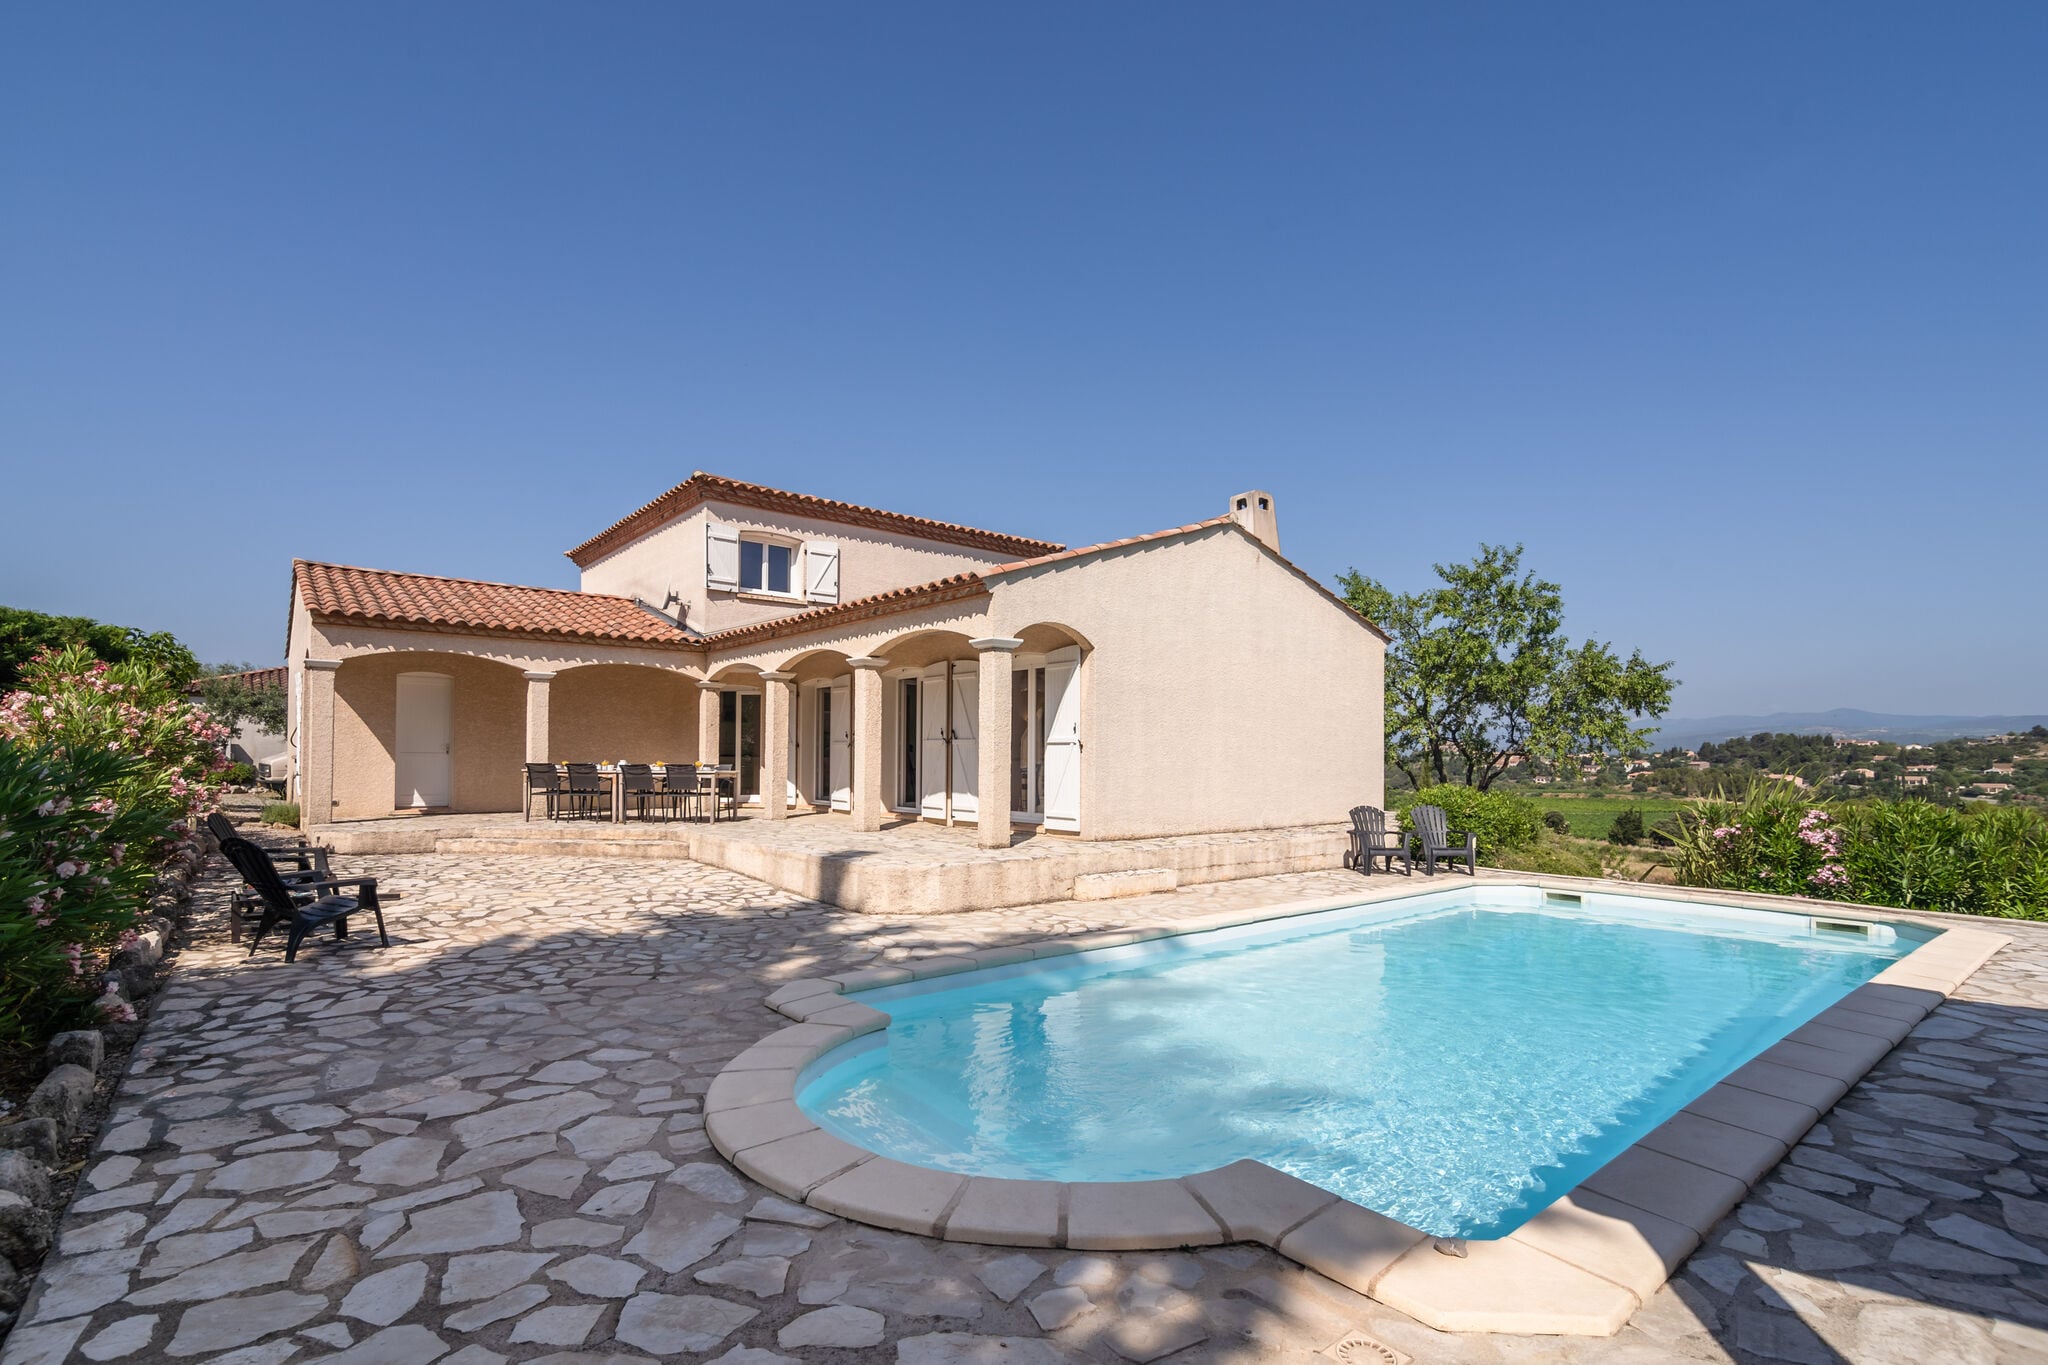 Royale en luxe villa, verwarmd privé zwembad, fantastisch uitzicht en privacy